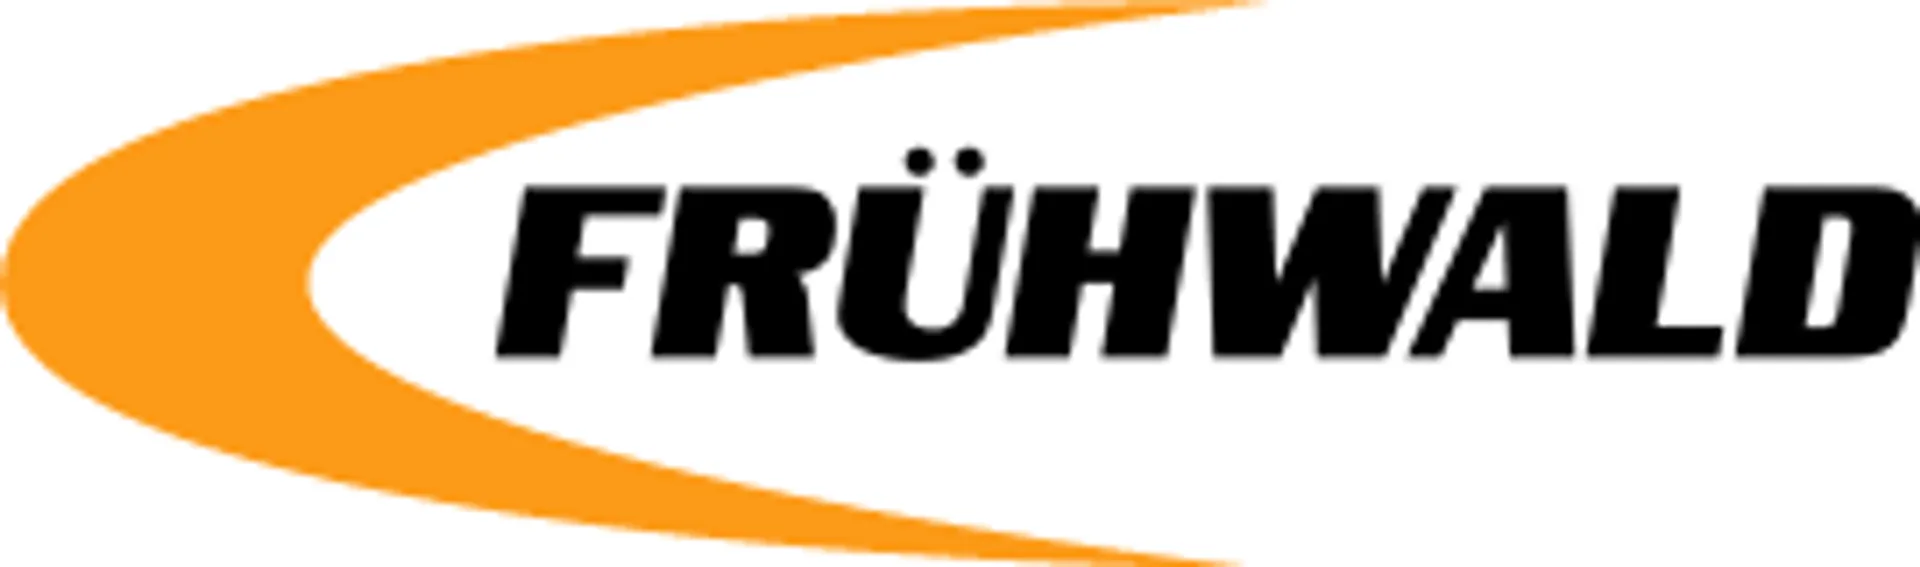 FRHÜWALD  logo die aktuell Flugblatt